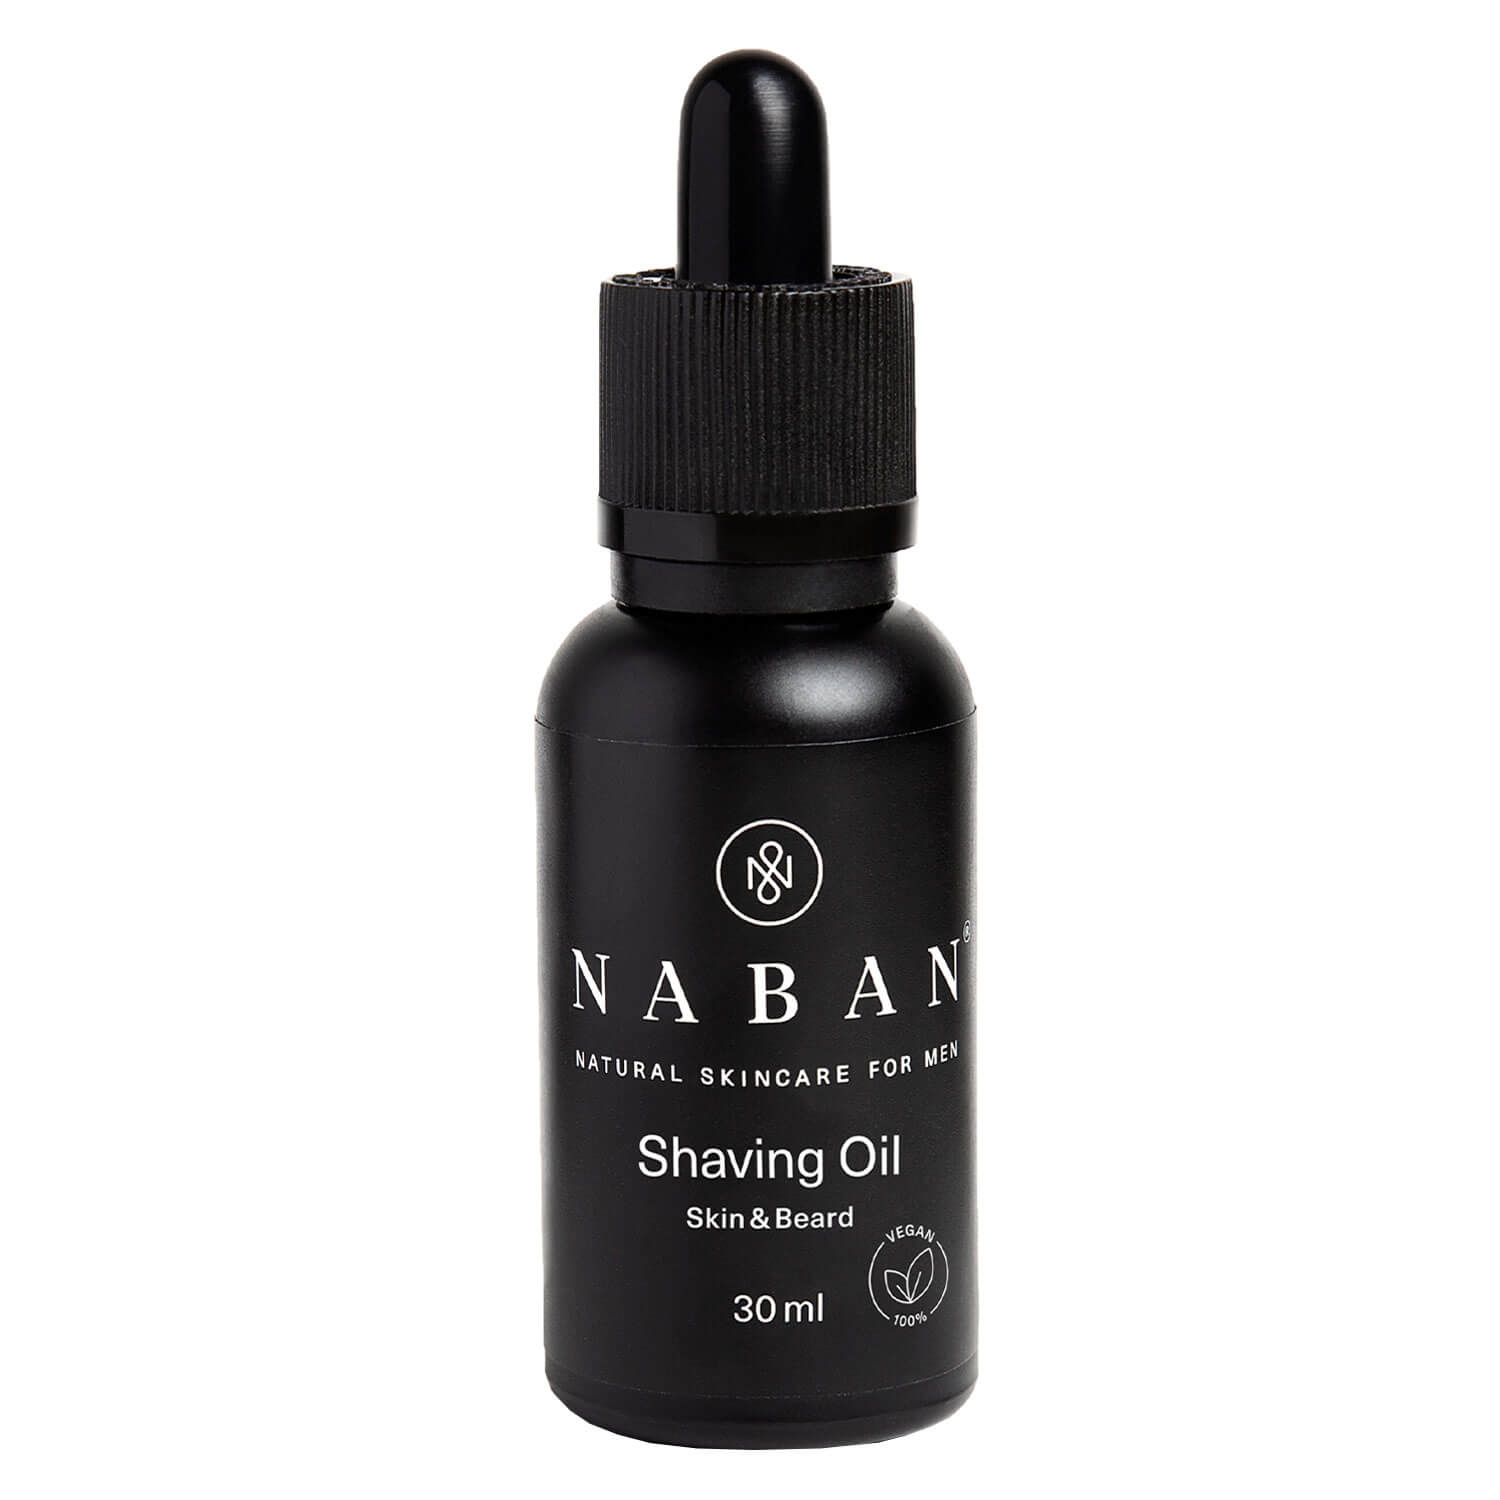 Produktbild von NABAN - Shaving Oil